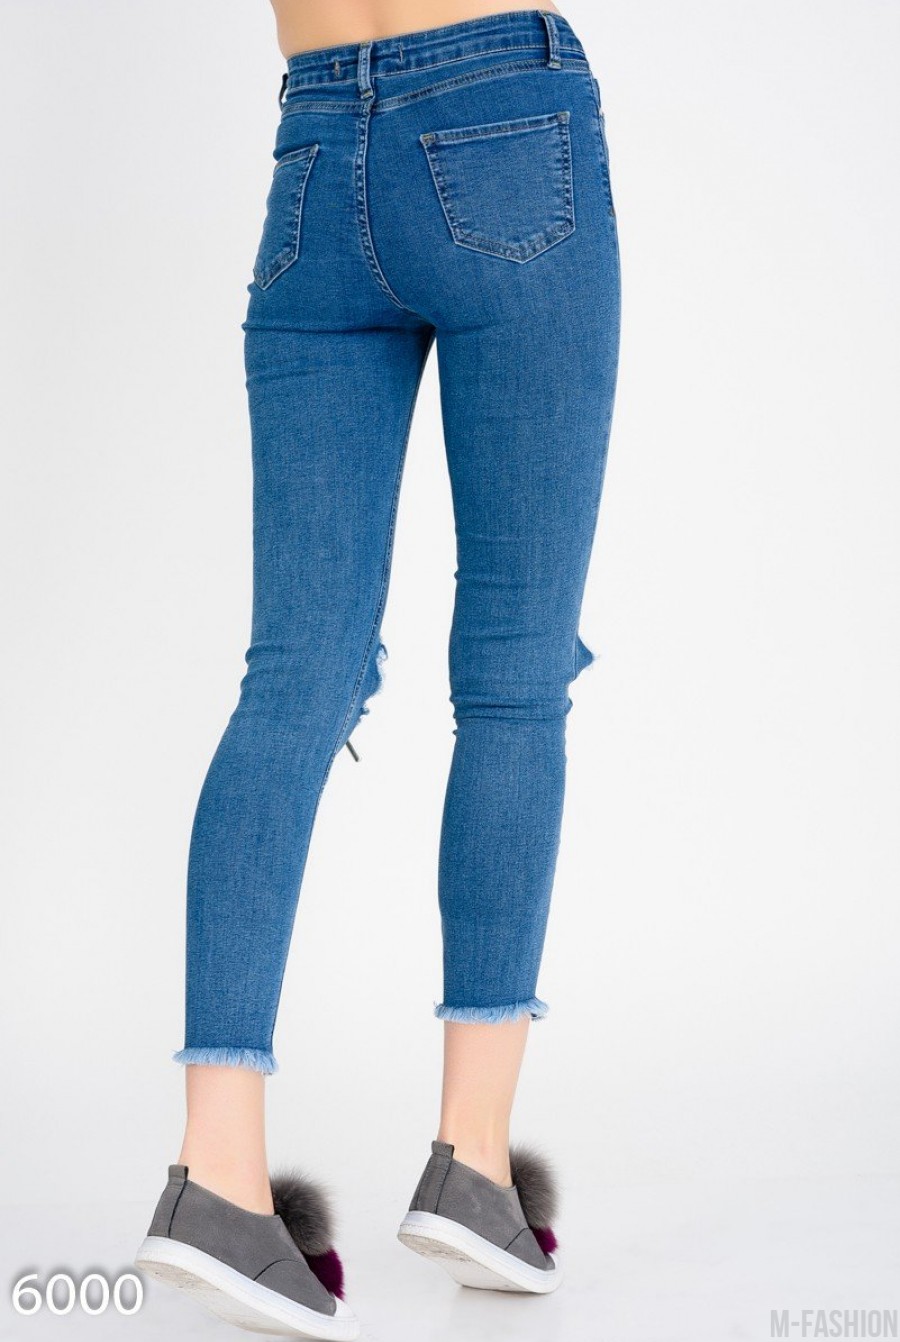 Короткие узкие джинсы с крупными дырками на коленях- Фото 4